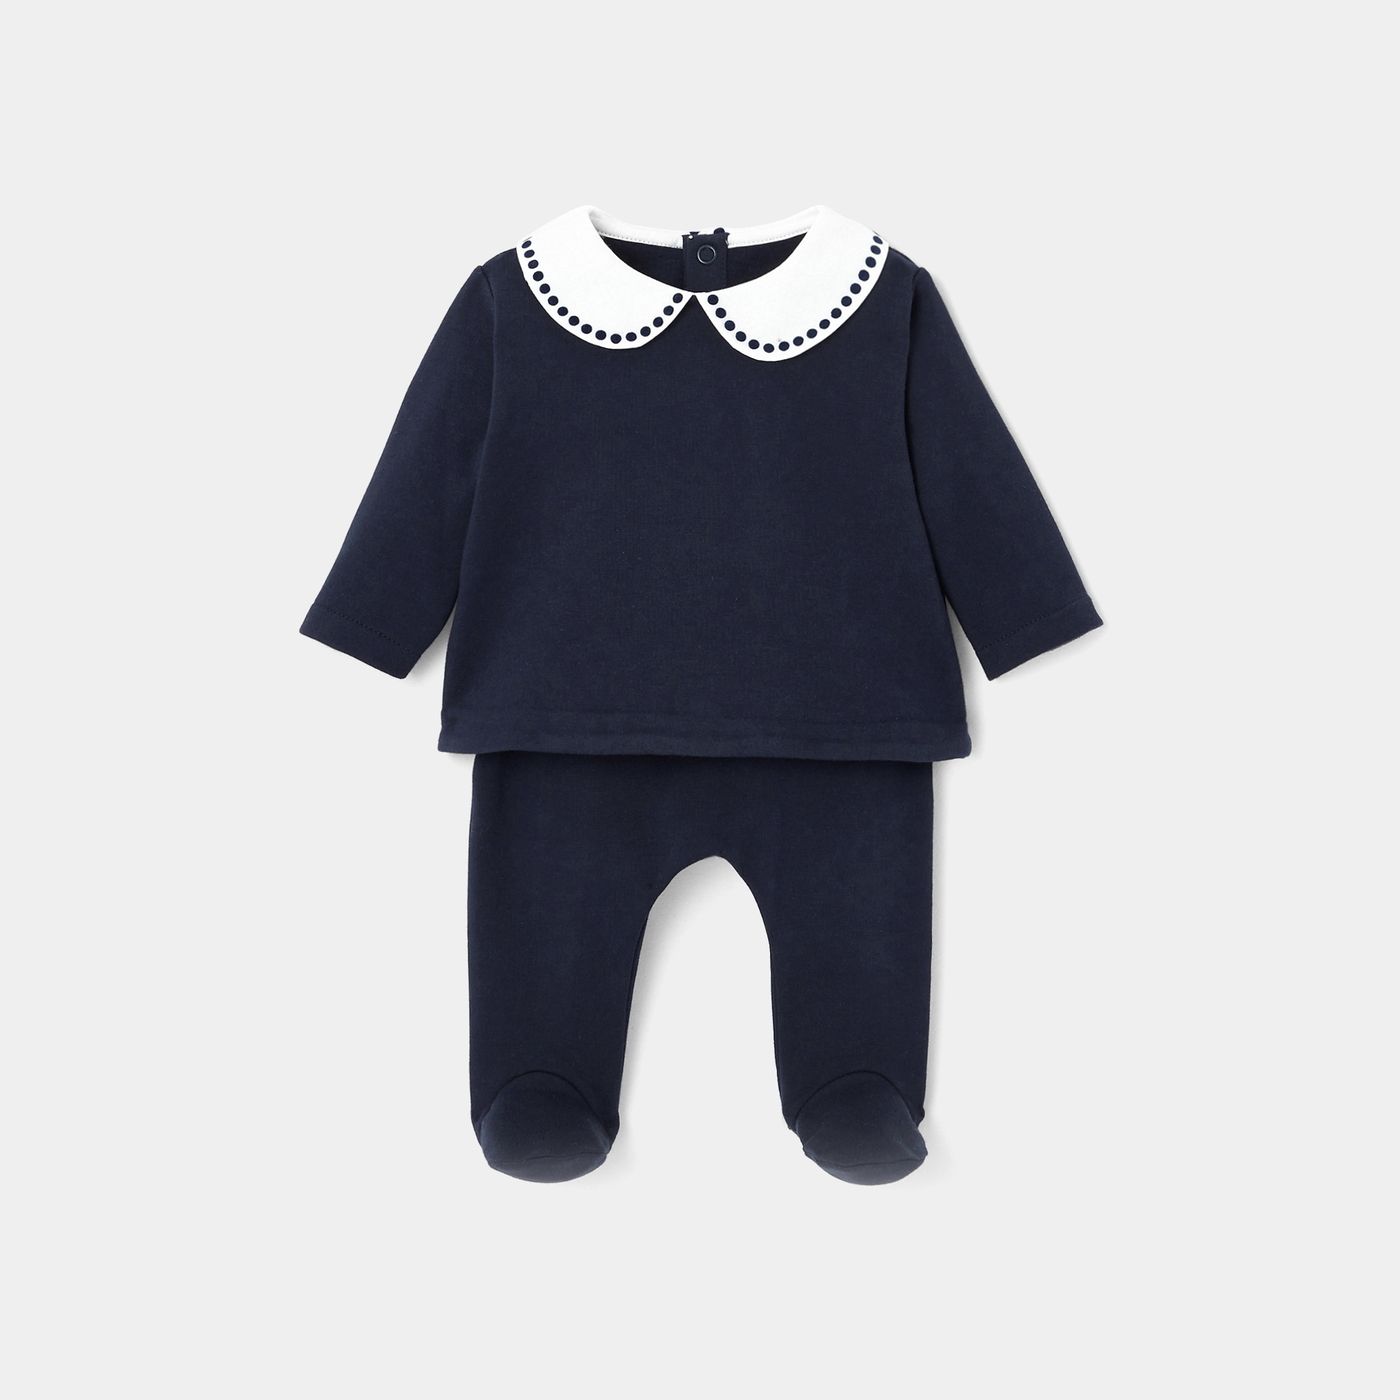 Baby girl fleece set - Jacadi | Jacadi (US)